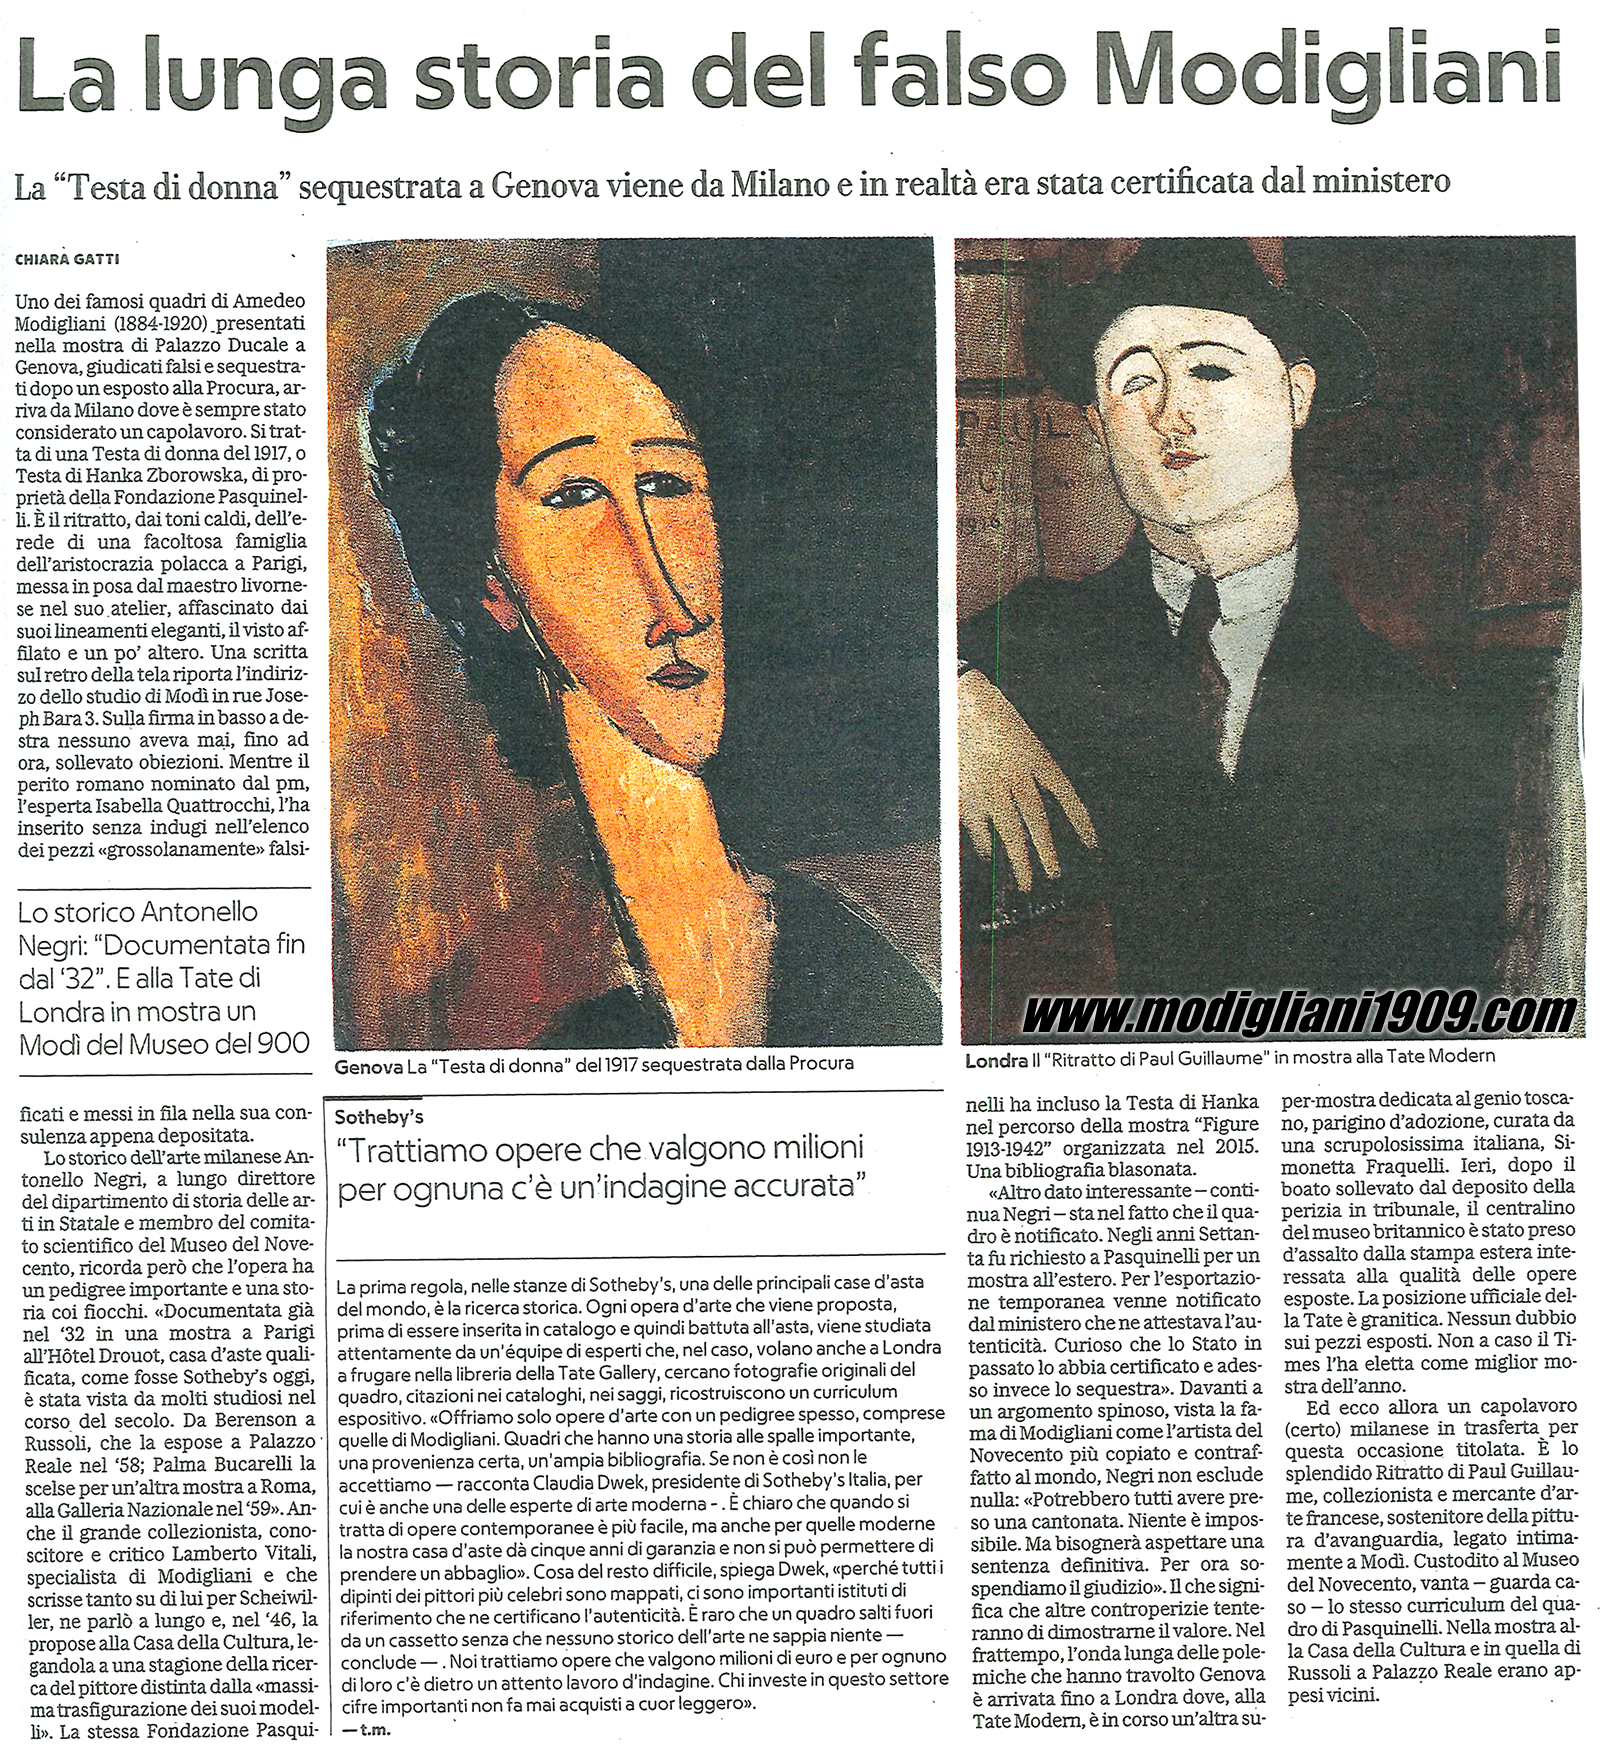 La lunga storia del falso Modigliani